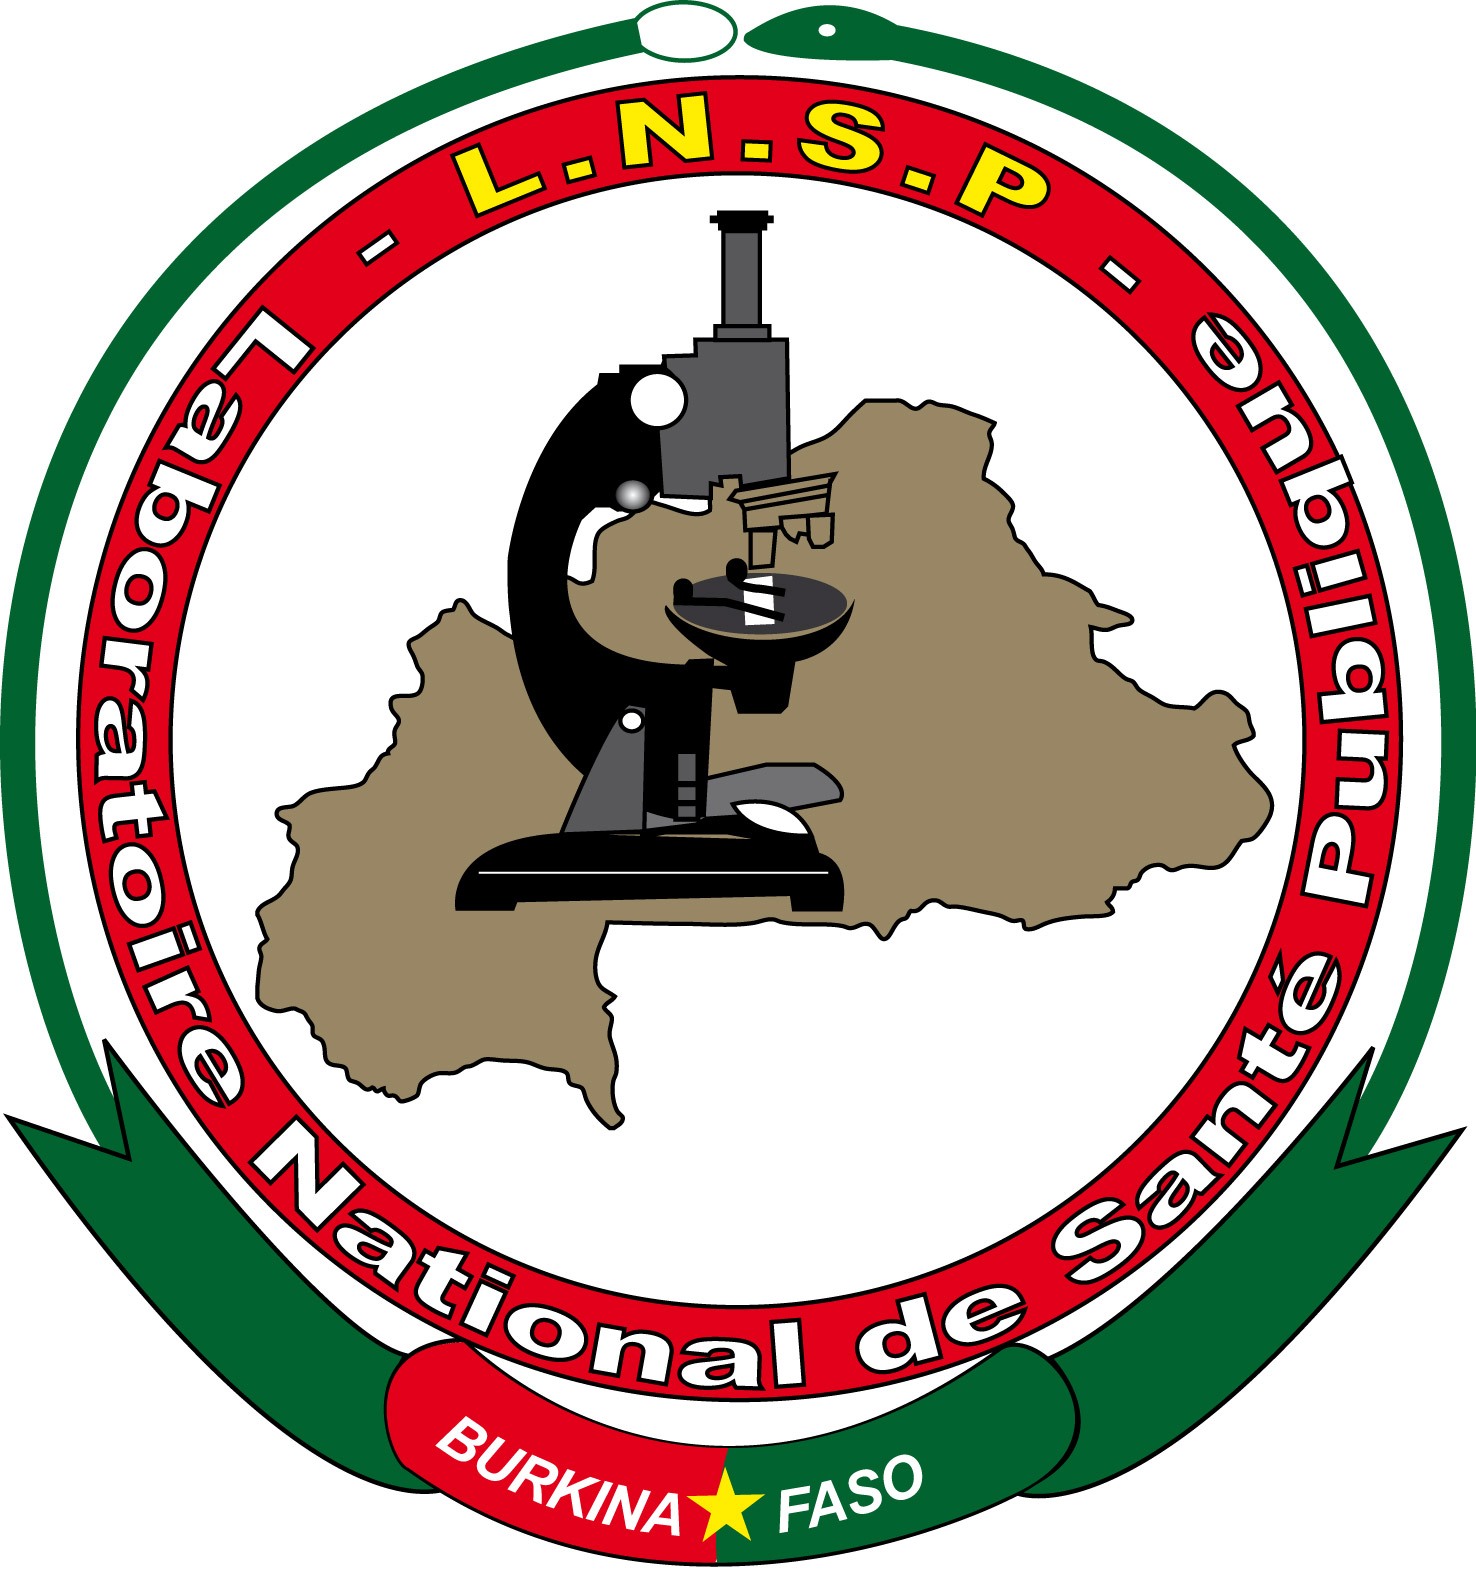 Laboratoire National de Santé Public logo